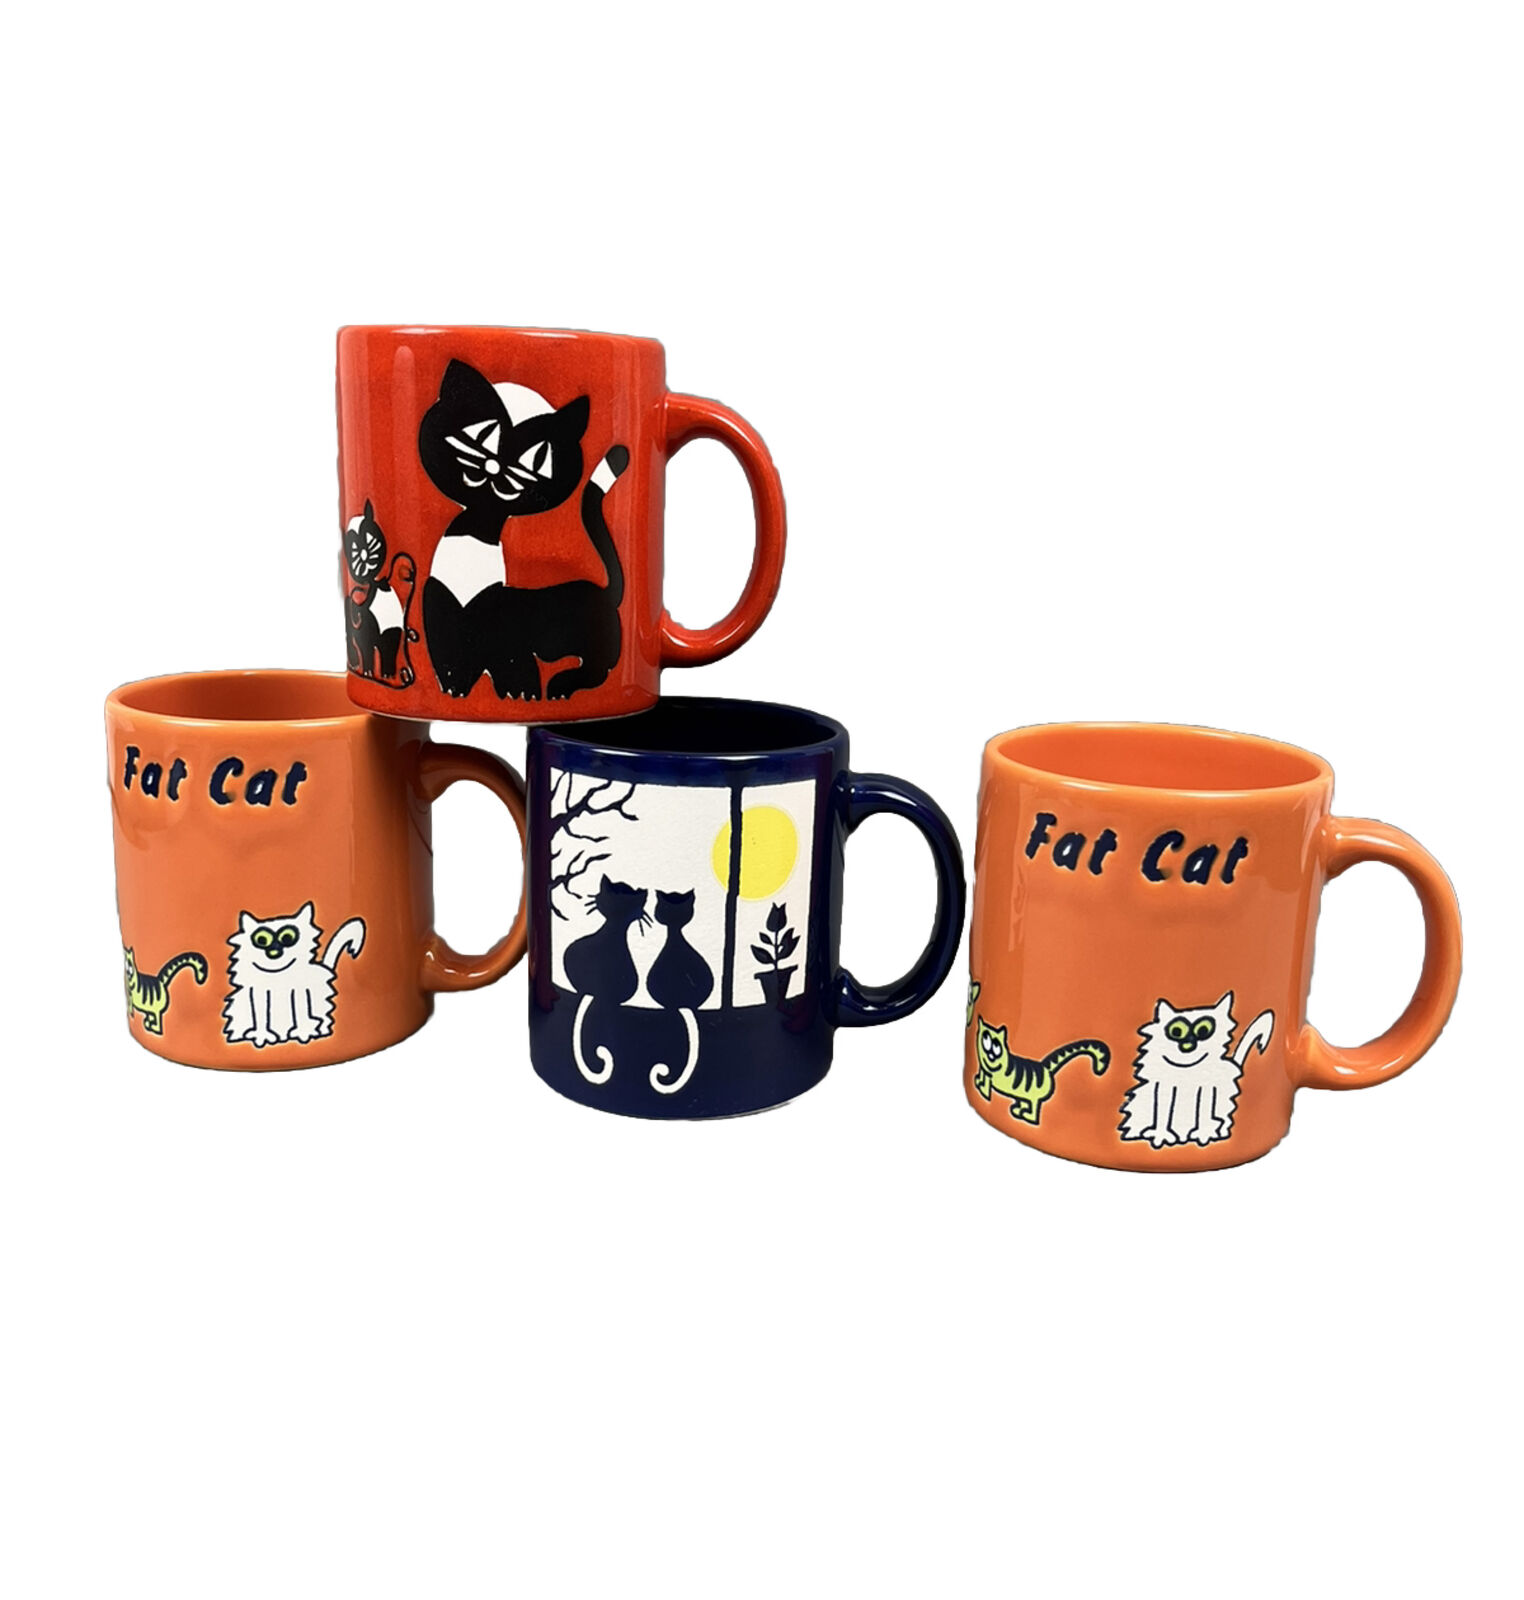 4 Coffee Mug Cup Waechtersbach Cats in Window, Cat Yarn, Fat Cat - Vtg W Germany